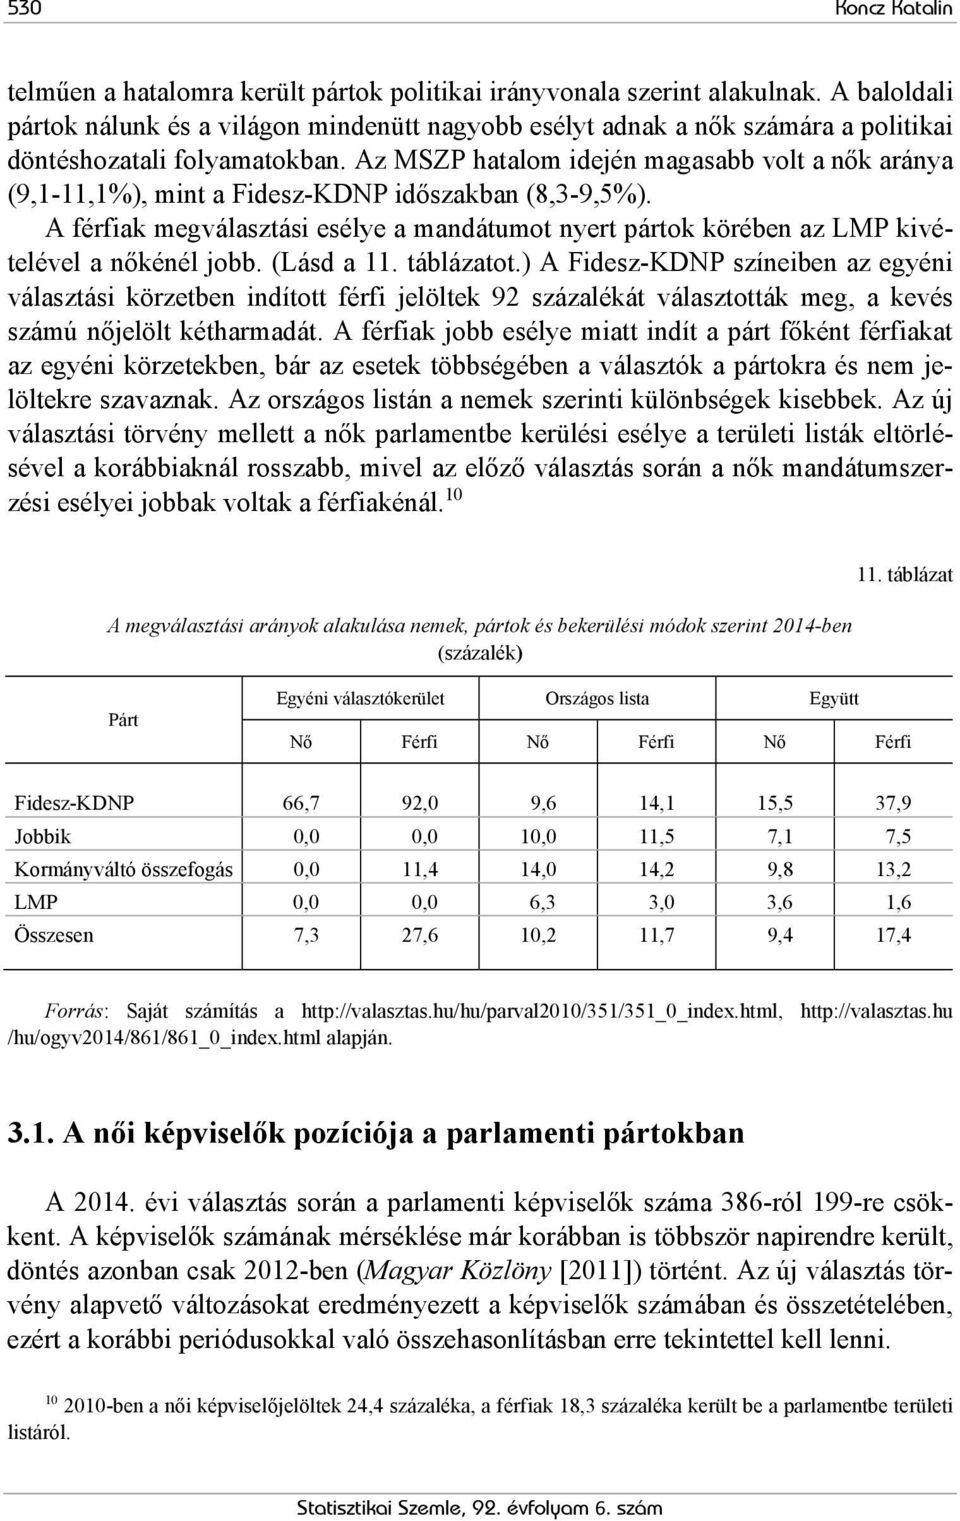 Az MSZP hatalom idején magasabb volt a nők aránya (9,1-11,1%), mint a Fidesz-KDNP időszakban (8,3-9,5%).